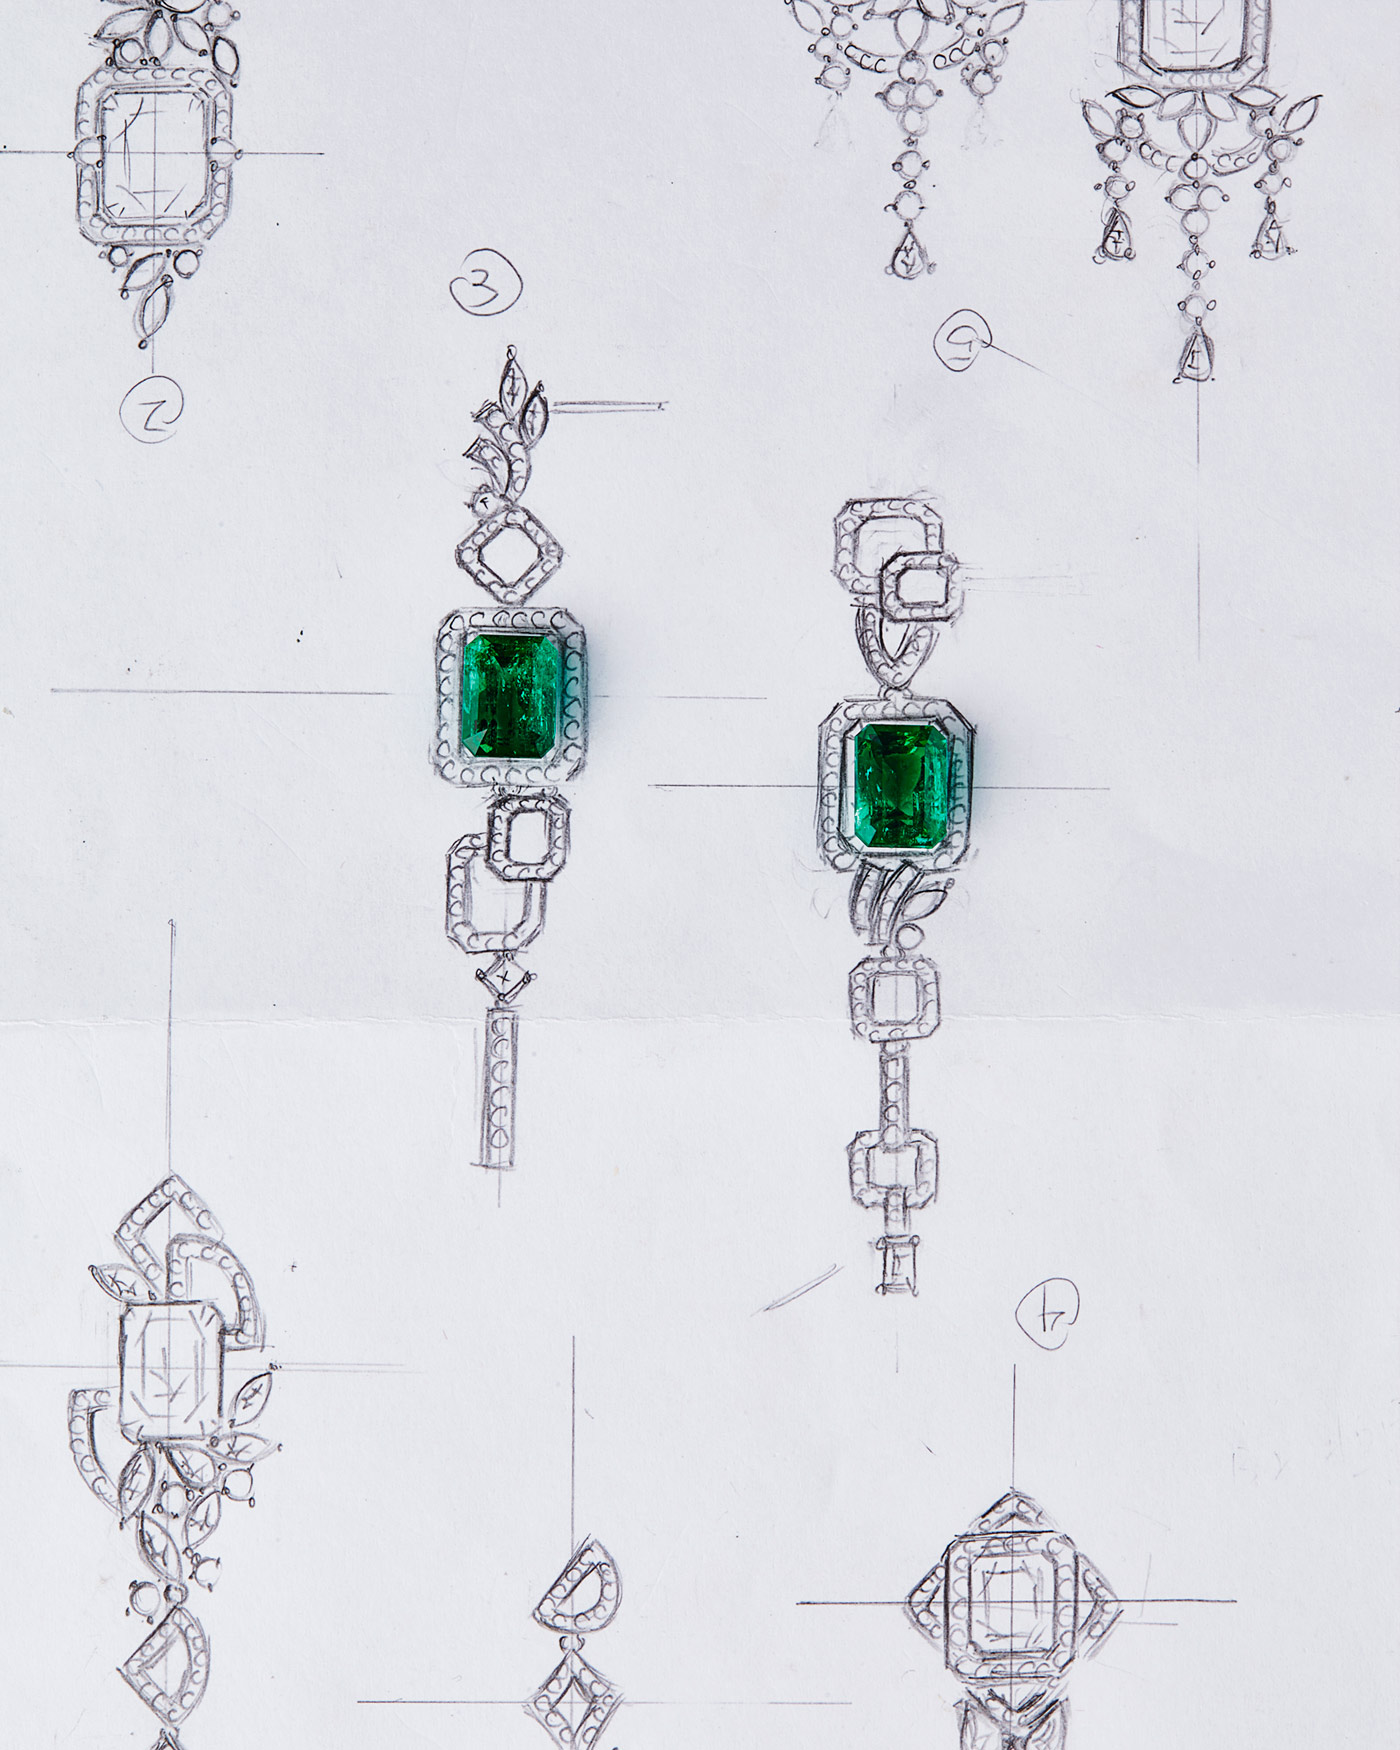 QIU Fine Jewelry earrings sketch